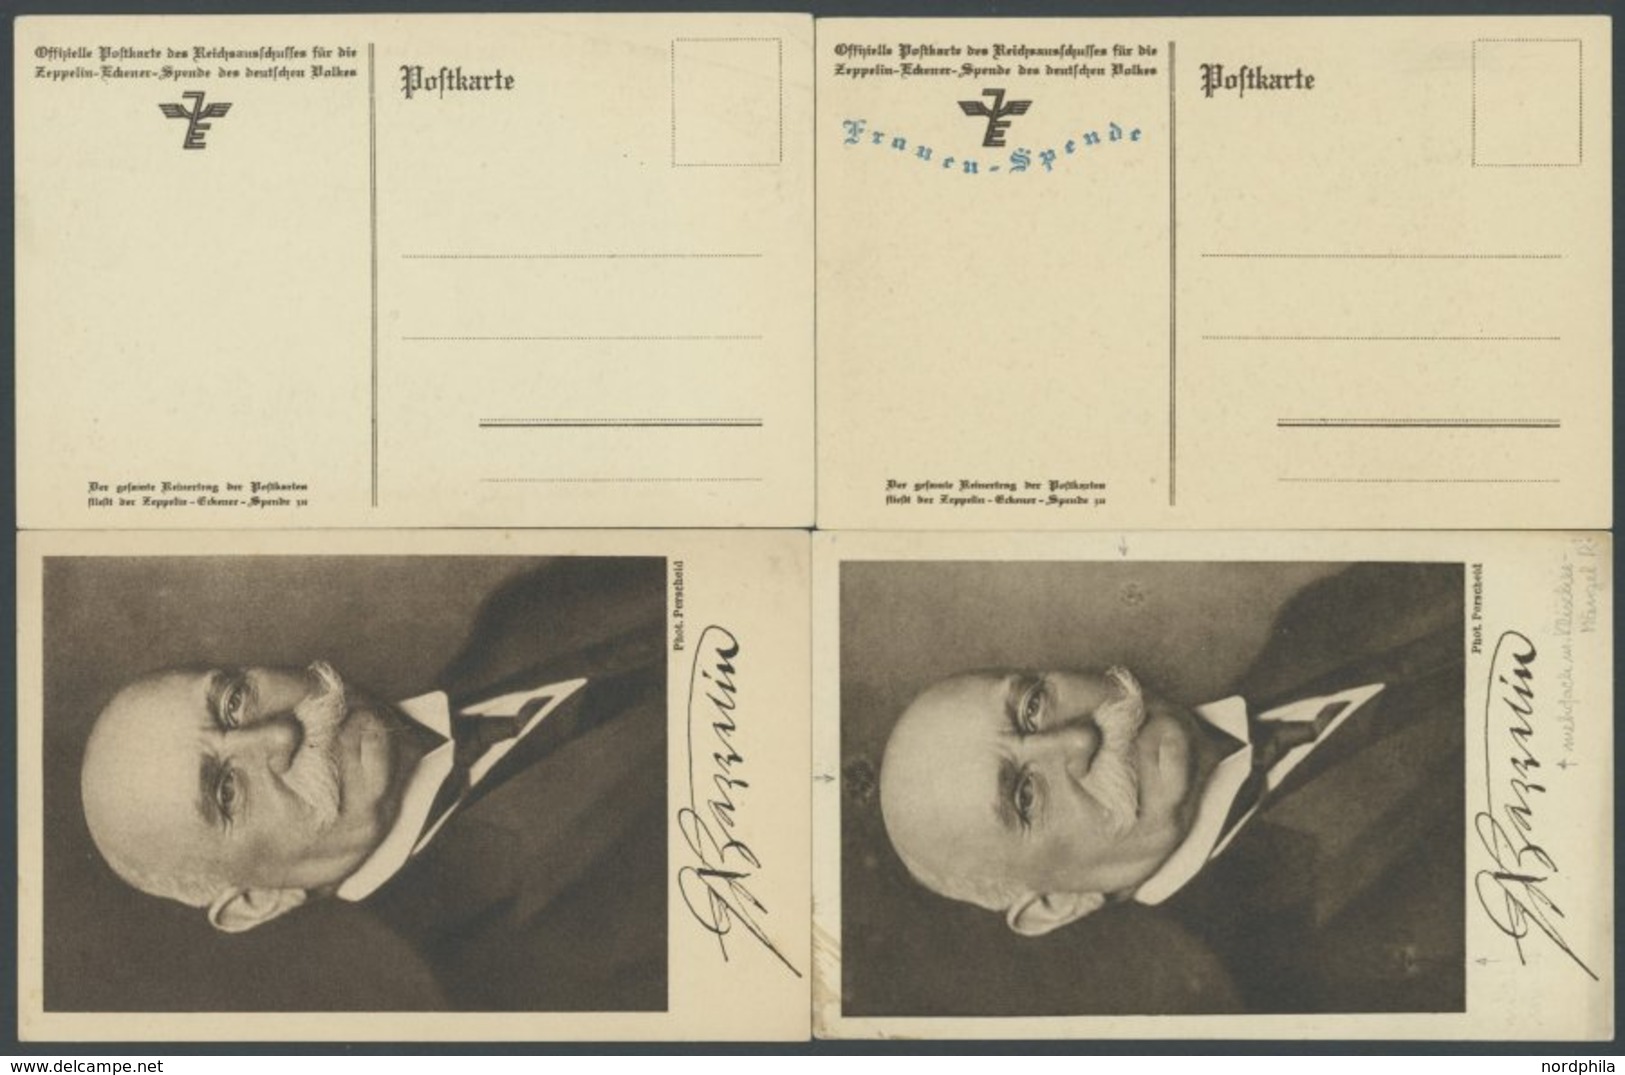 LUFTPOST-VIGNETTEN 1925, Zeppelin-Eckener-Spende Mit Blauem Zudruck Frauen-Spende, 4 Ungebrauchte Verschiedene Portraitk - Airmail & Zeppelin